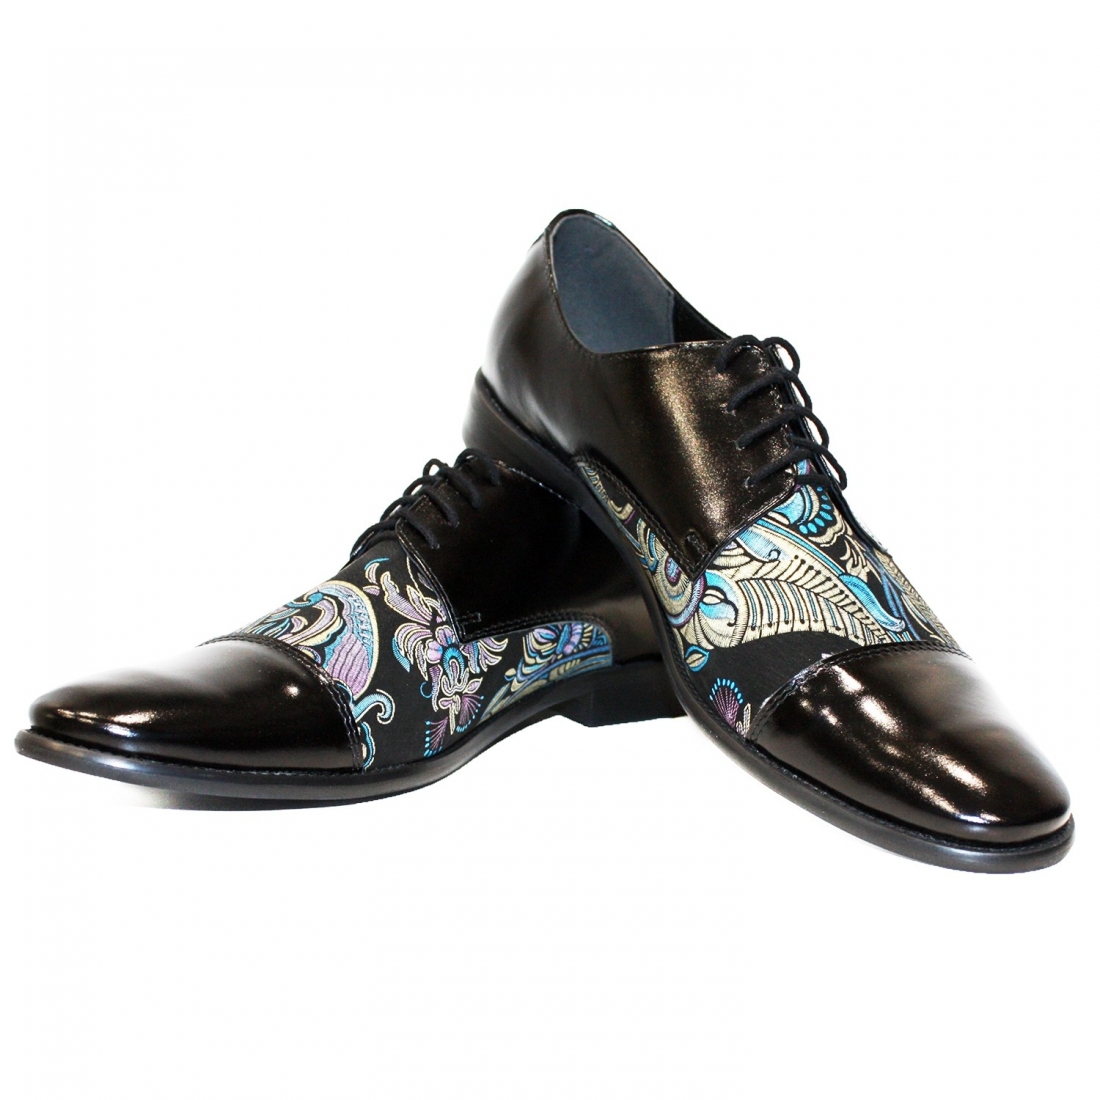 Modello Ulerro - Chaussure Classique - Handmade Colorful Italian Leather Shoes